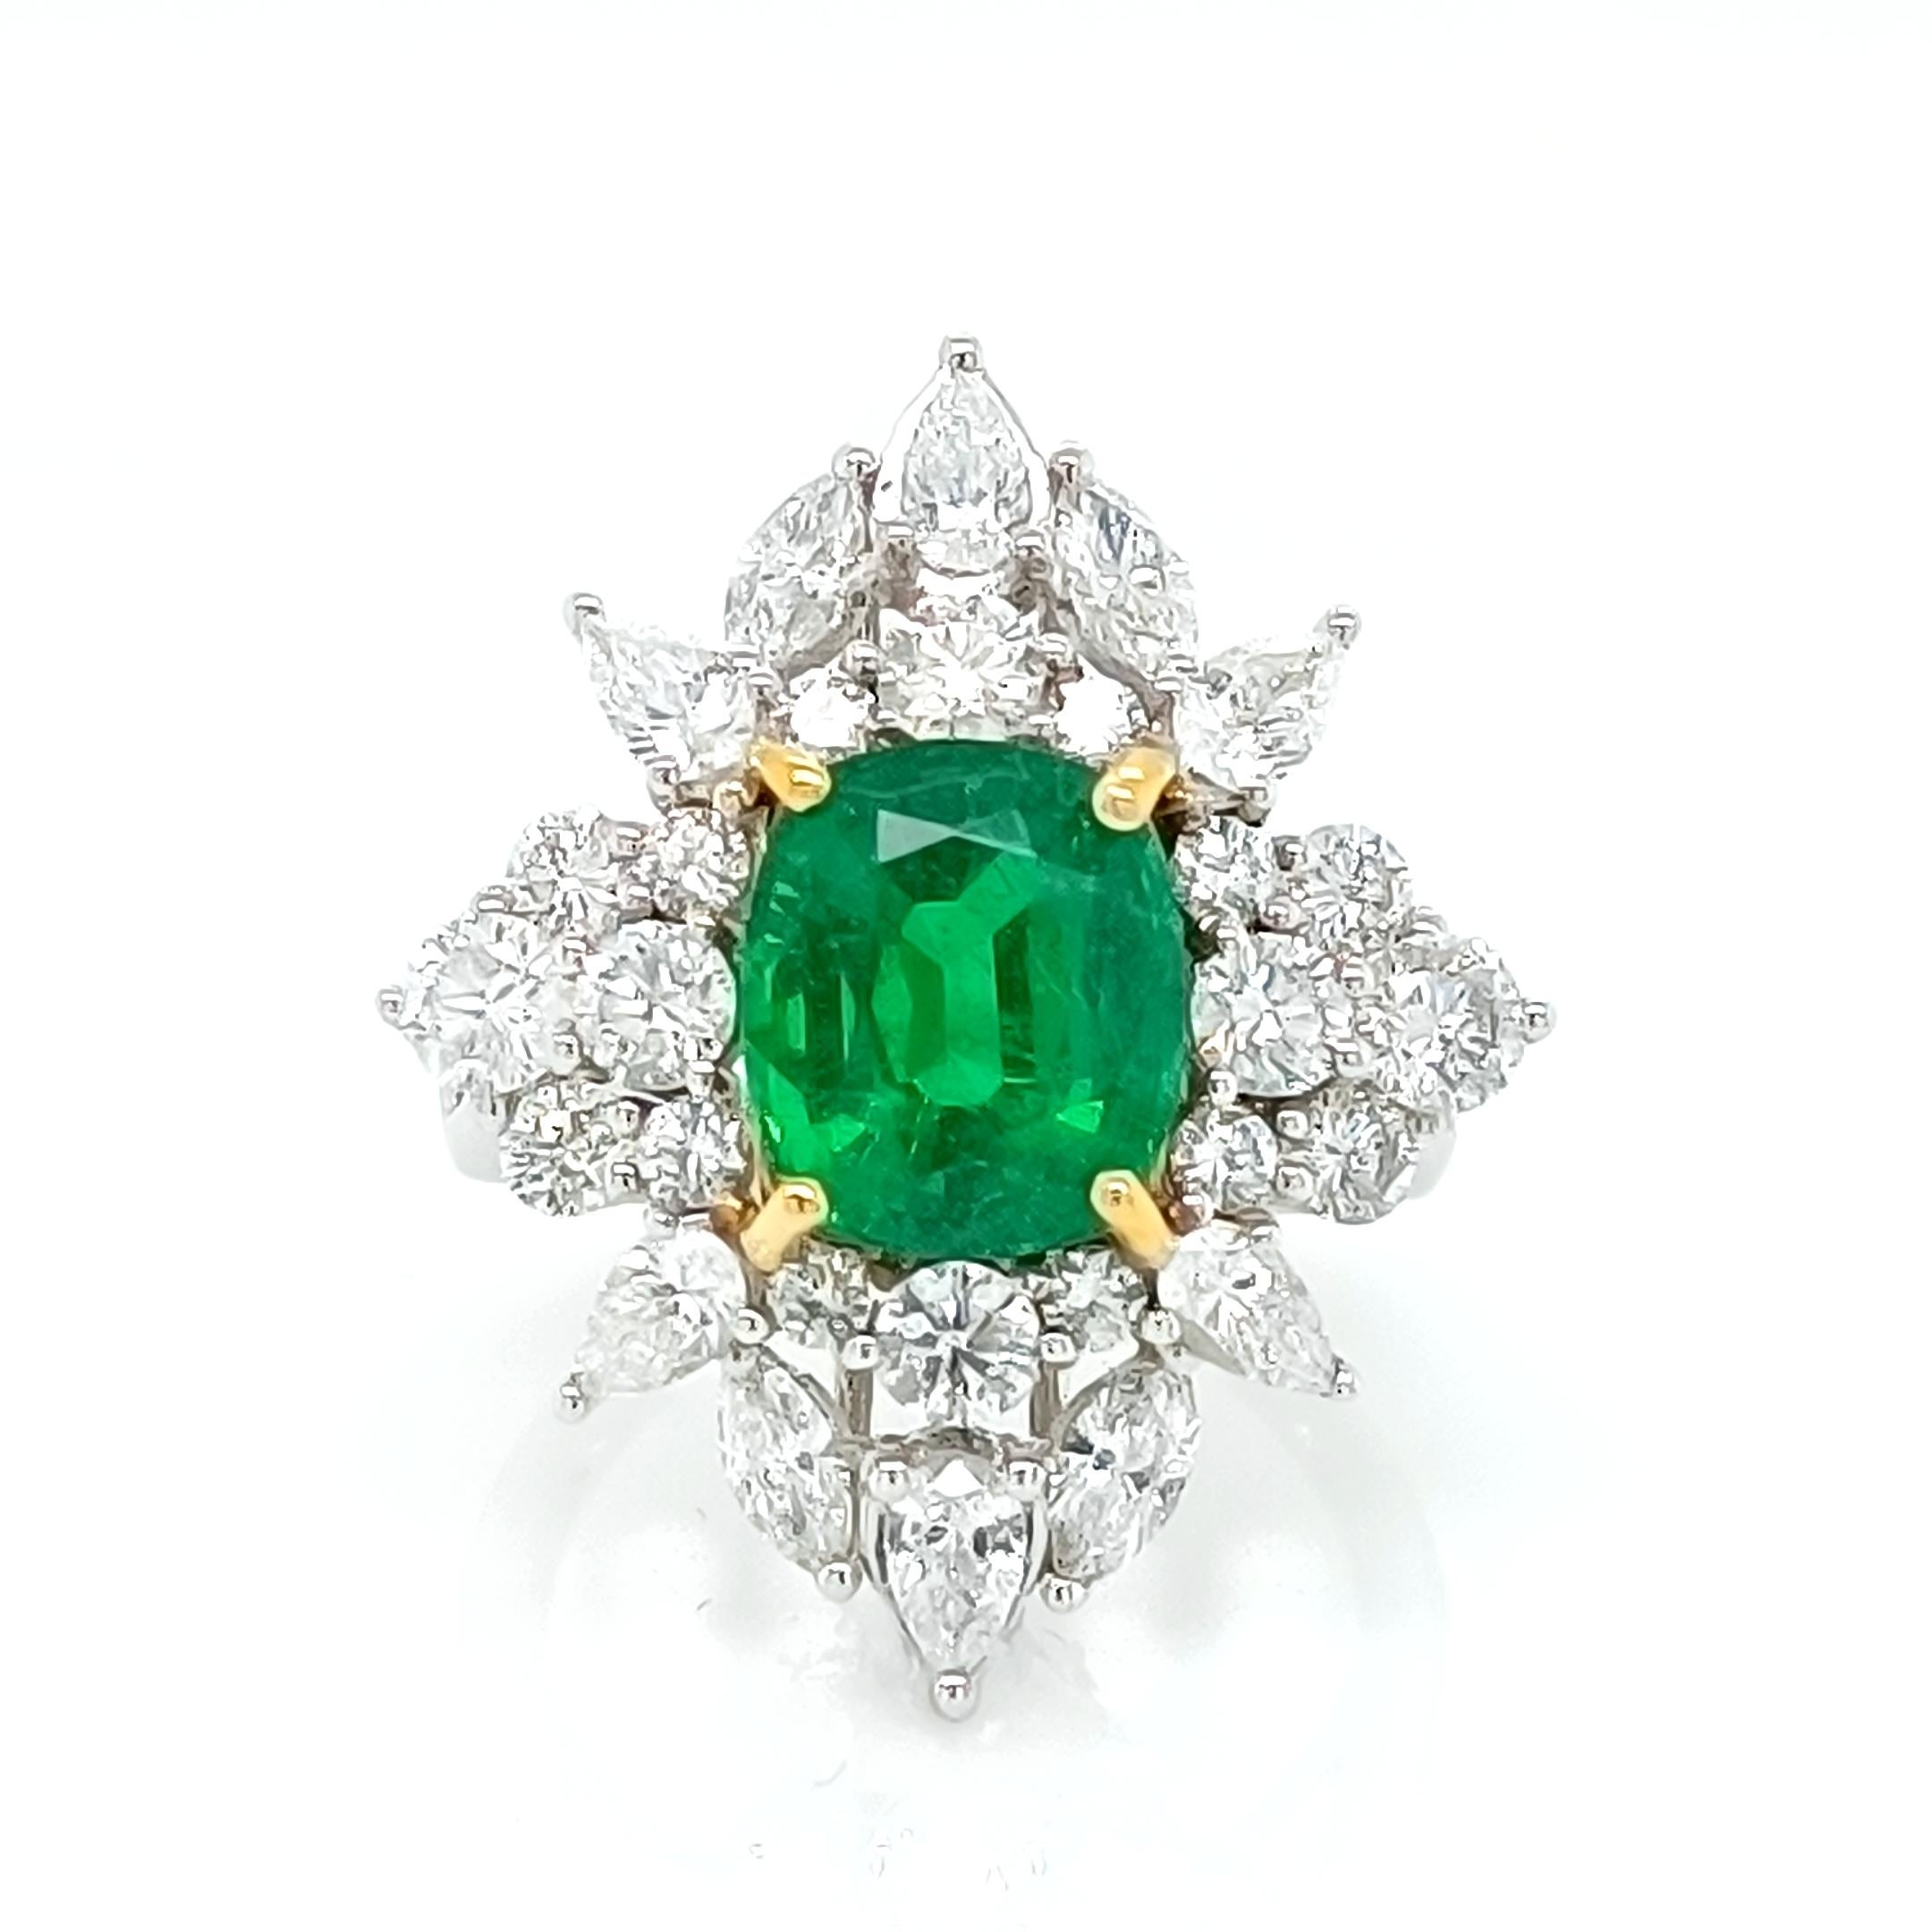 Sambischer Smaragd im Kissenschliff 3,25 Karat, akzentuiert durch Diamanten im Marquise-, Birnen- und runden Brillantschliff 2,75 Karat 

Satz in 18K Gold 2-Ton, 6,75 Gramm

*Smaragdgrün 